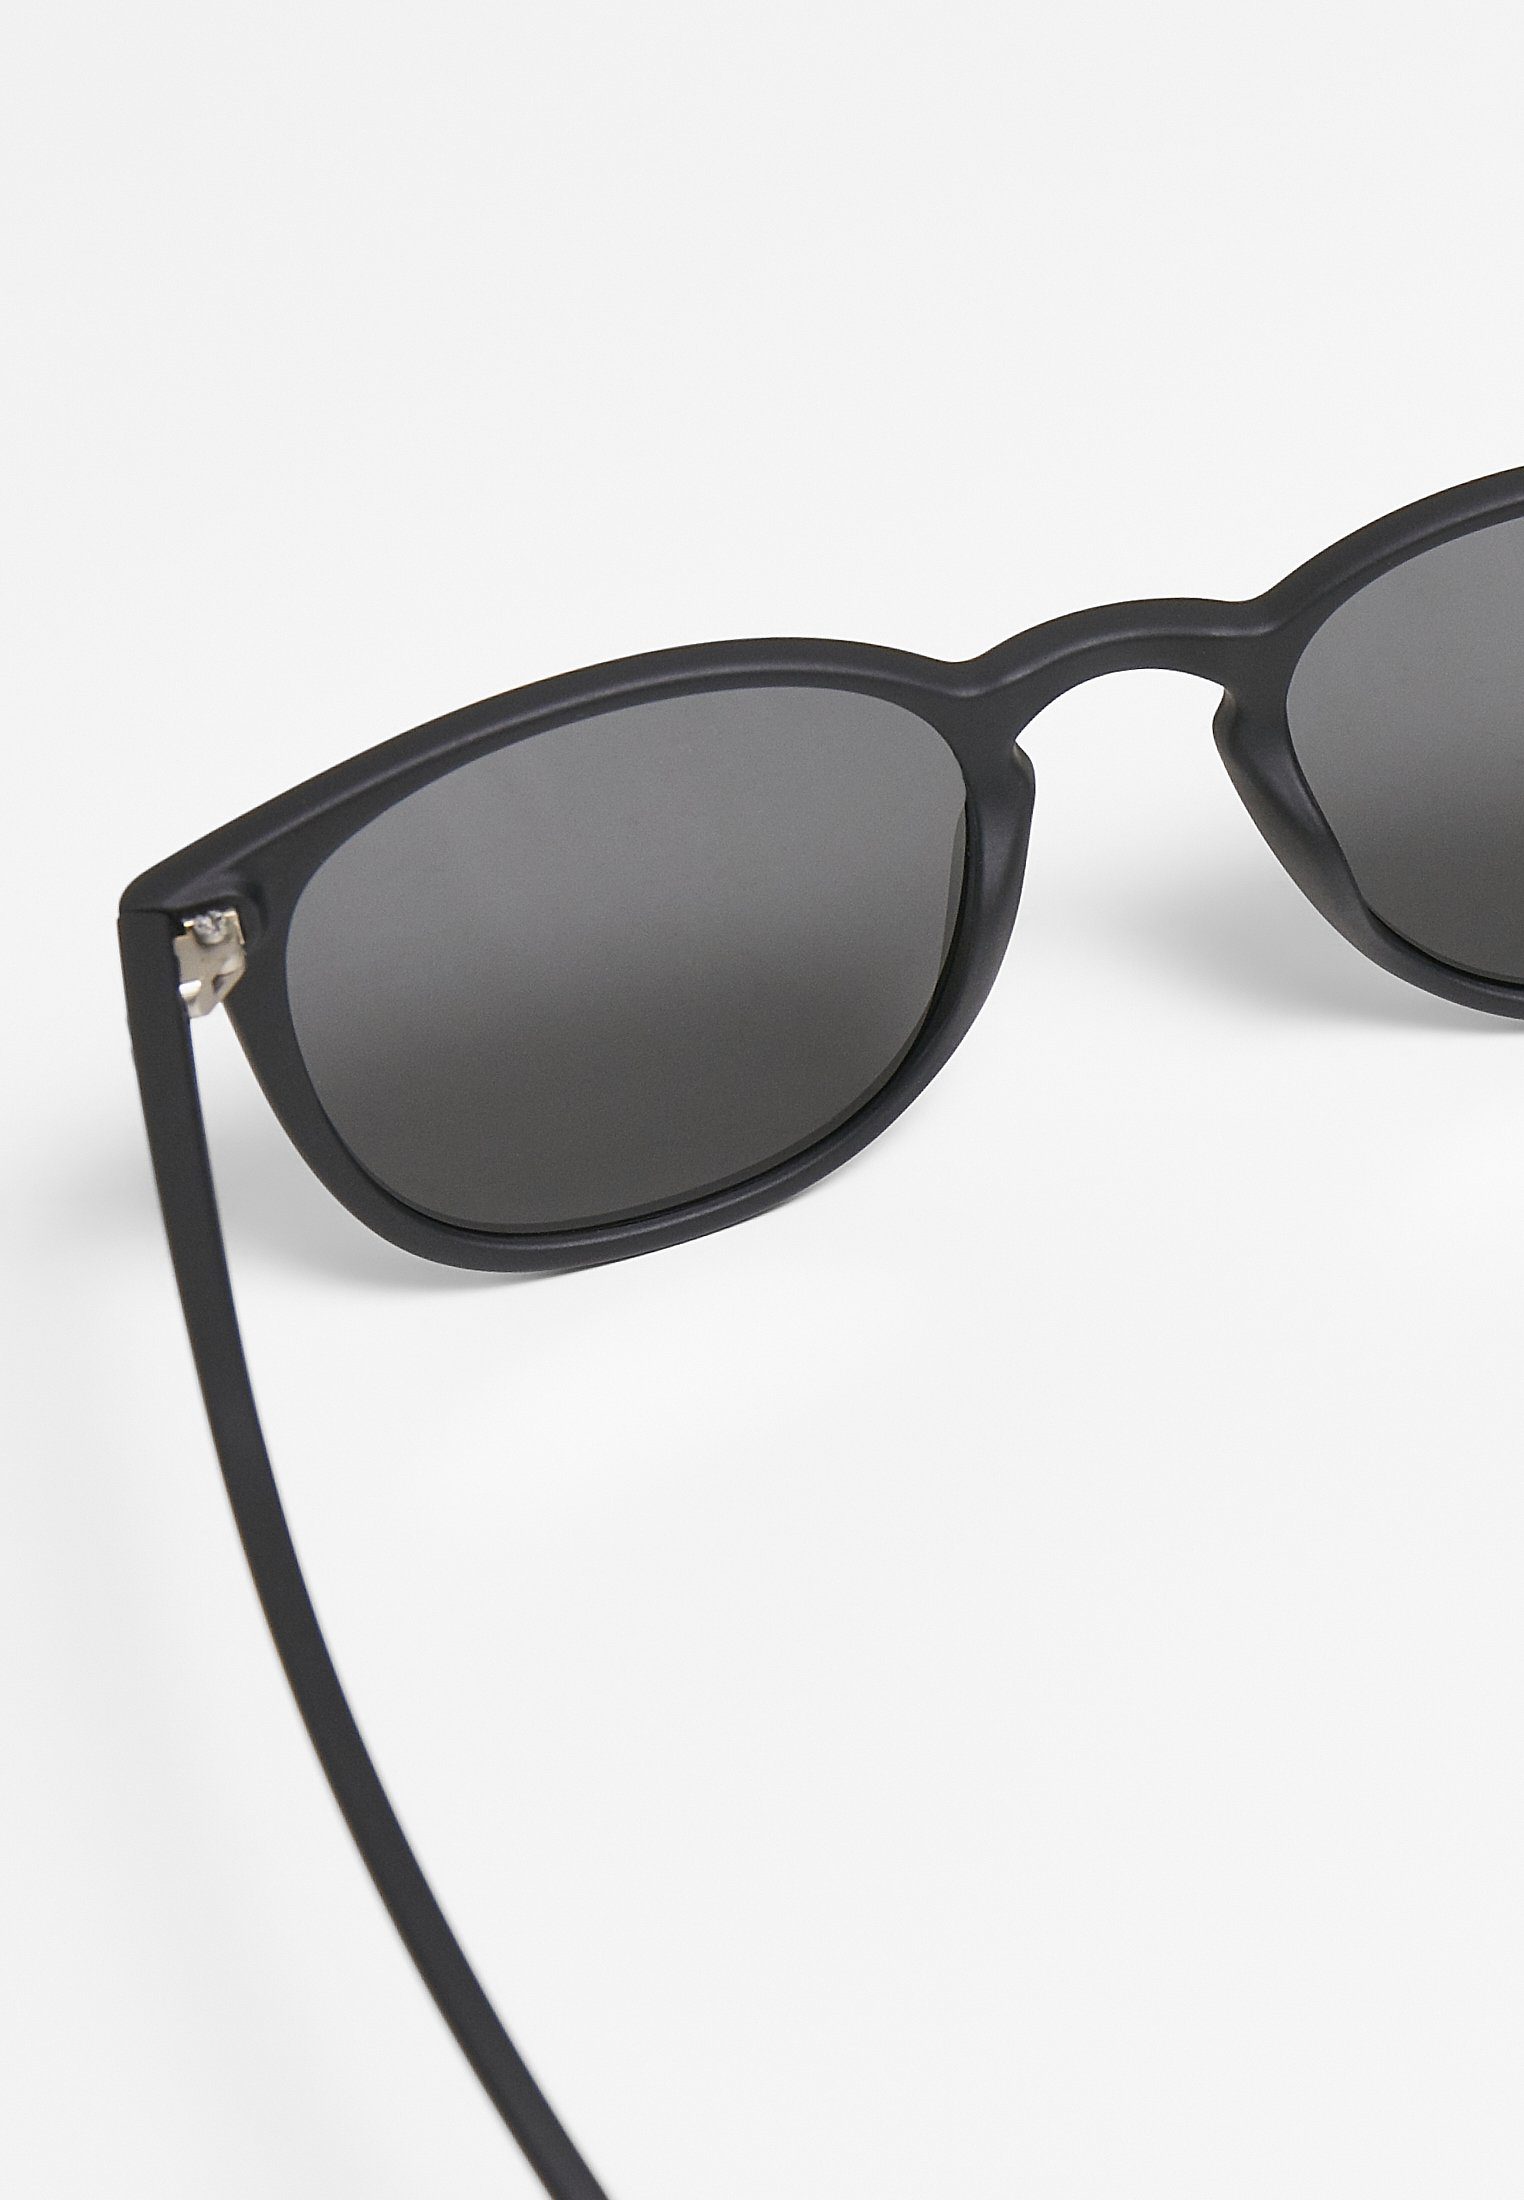 Sonnenbrille Accessoires CLASSICS URBAN black/grey Arthur UC Sunglasses